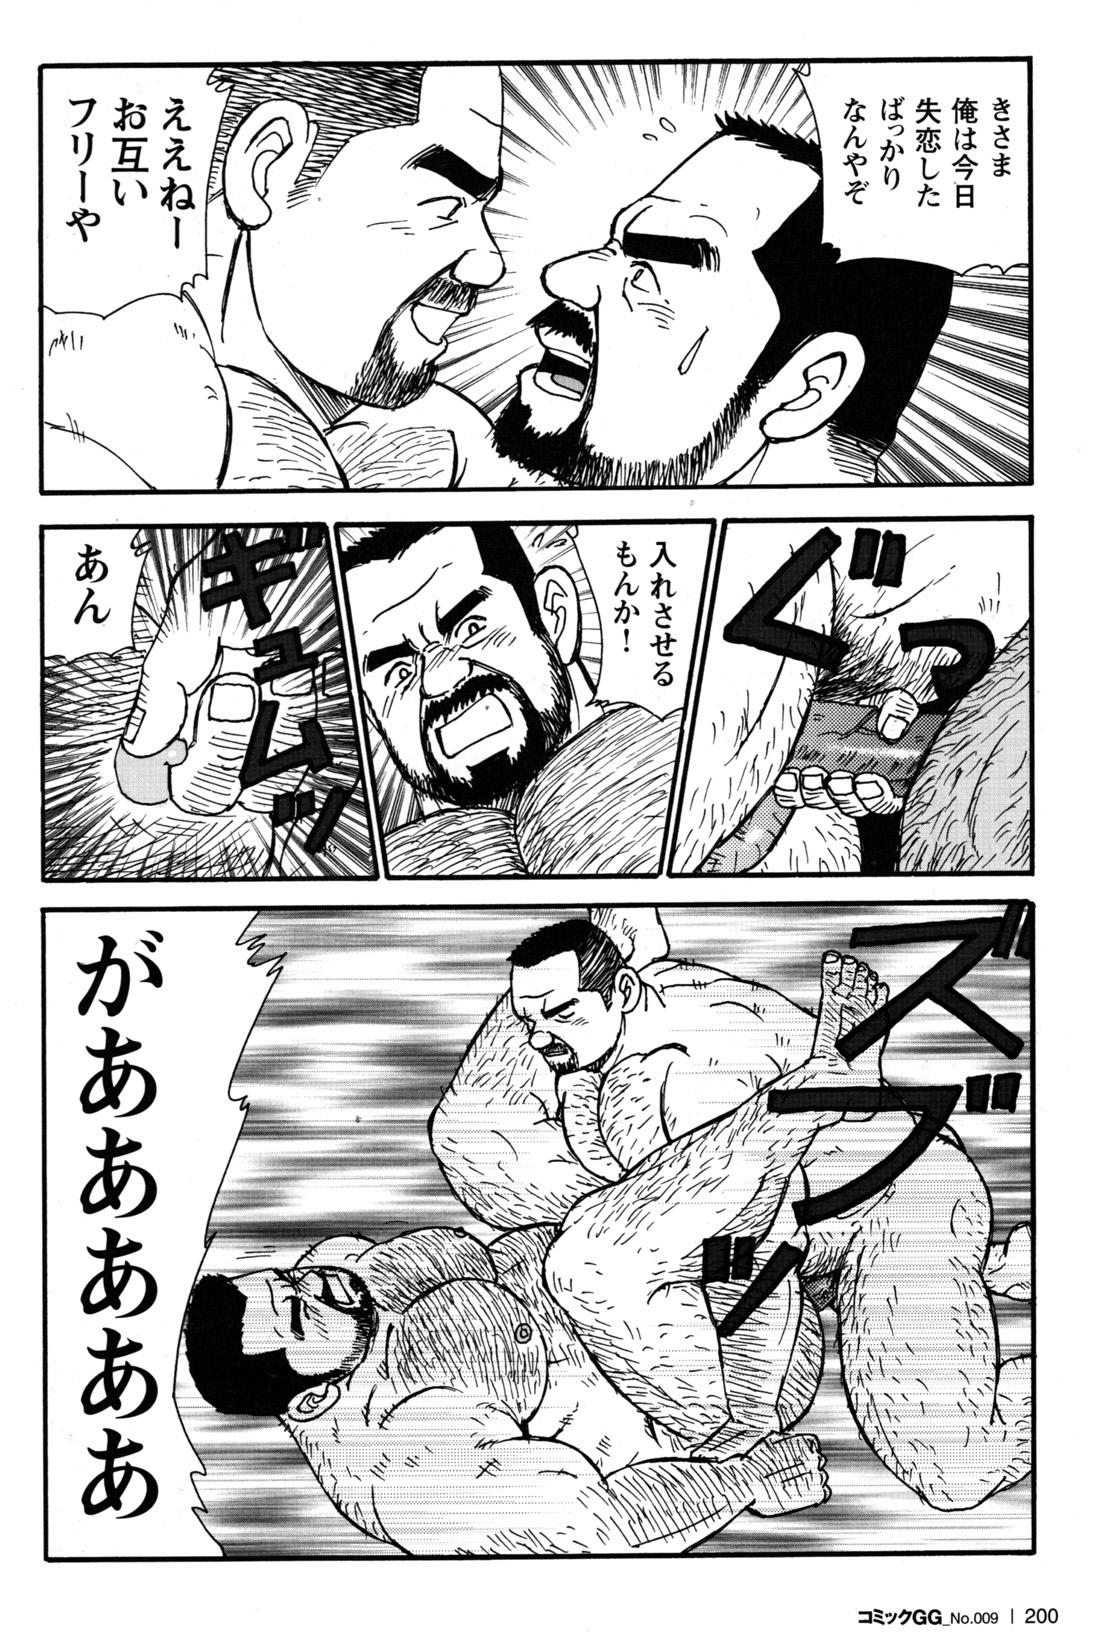 Comic G-men Gaho No.09 Gacchibi Zeme 183